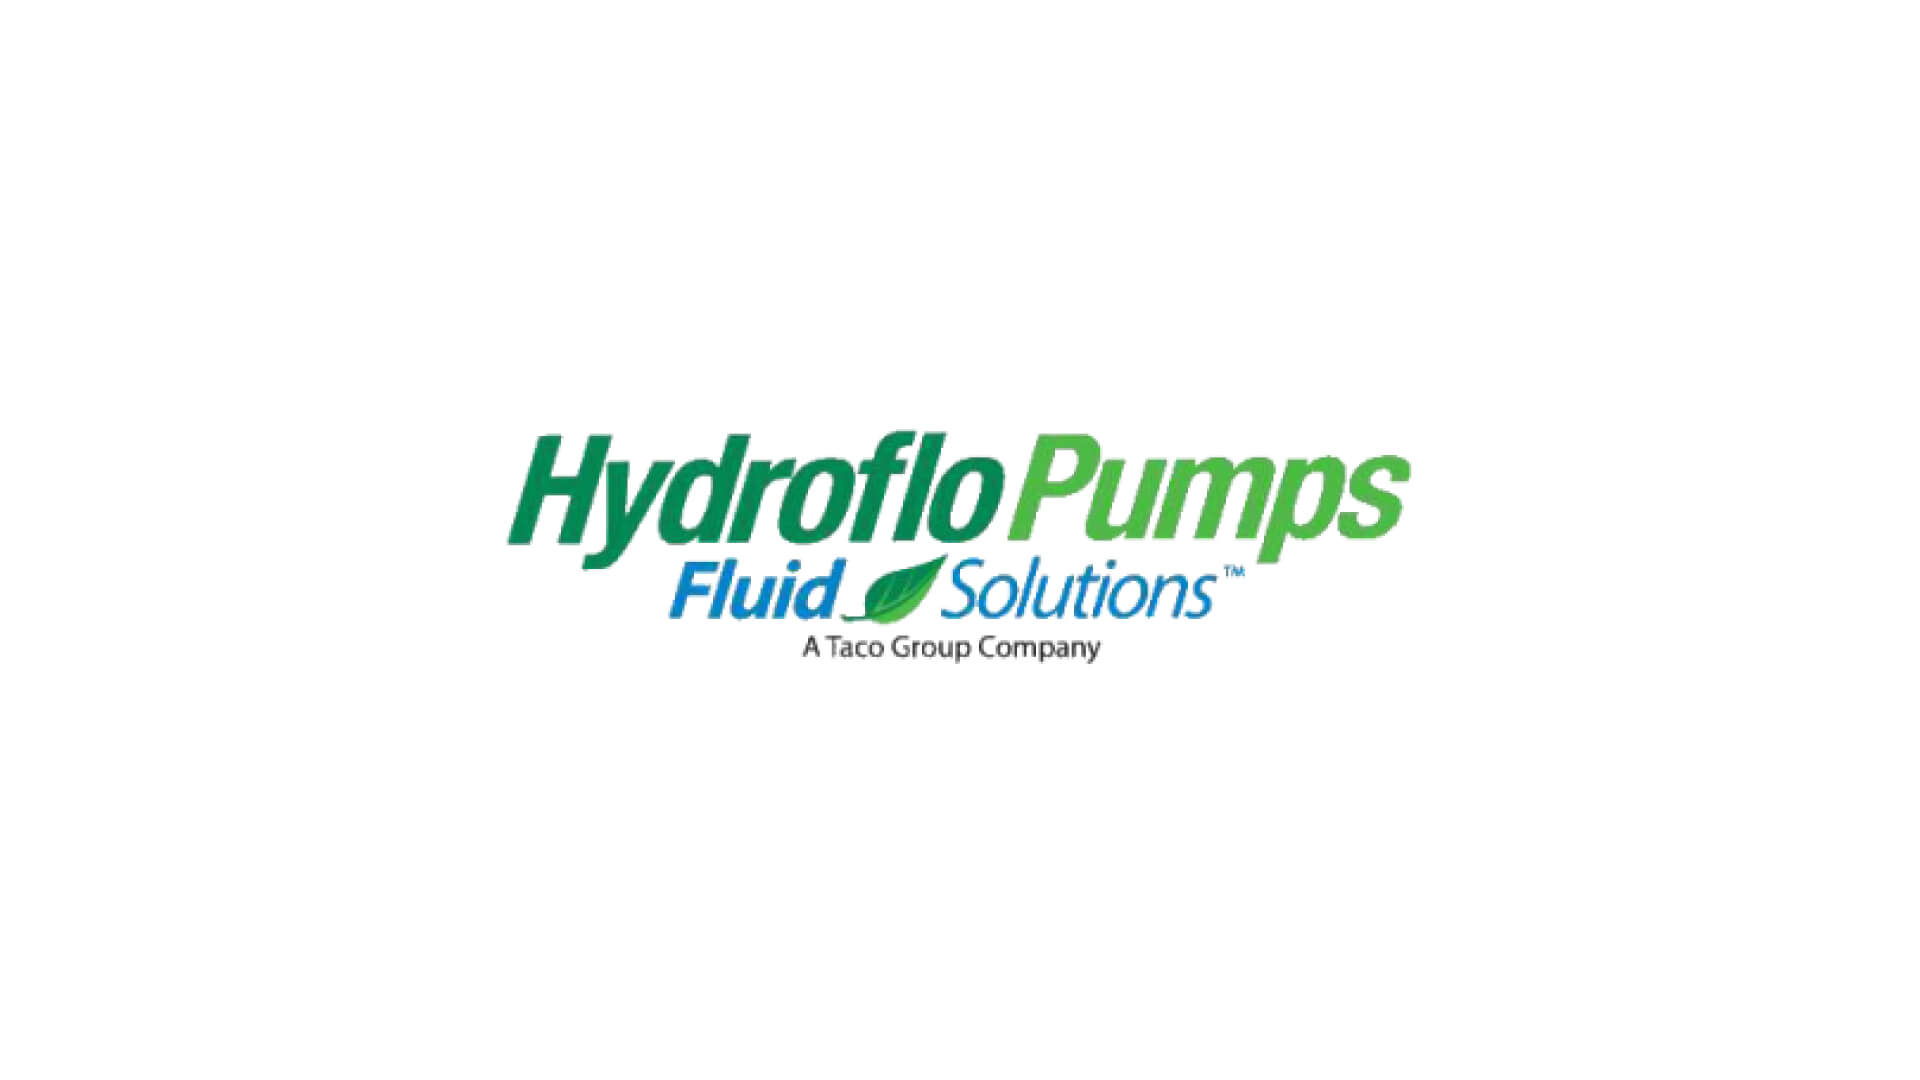 Hydroflo Pumps logo in color